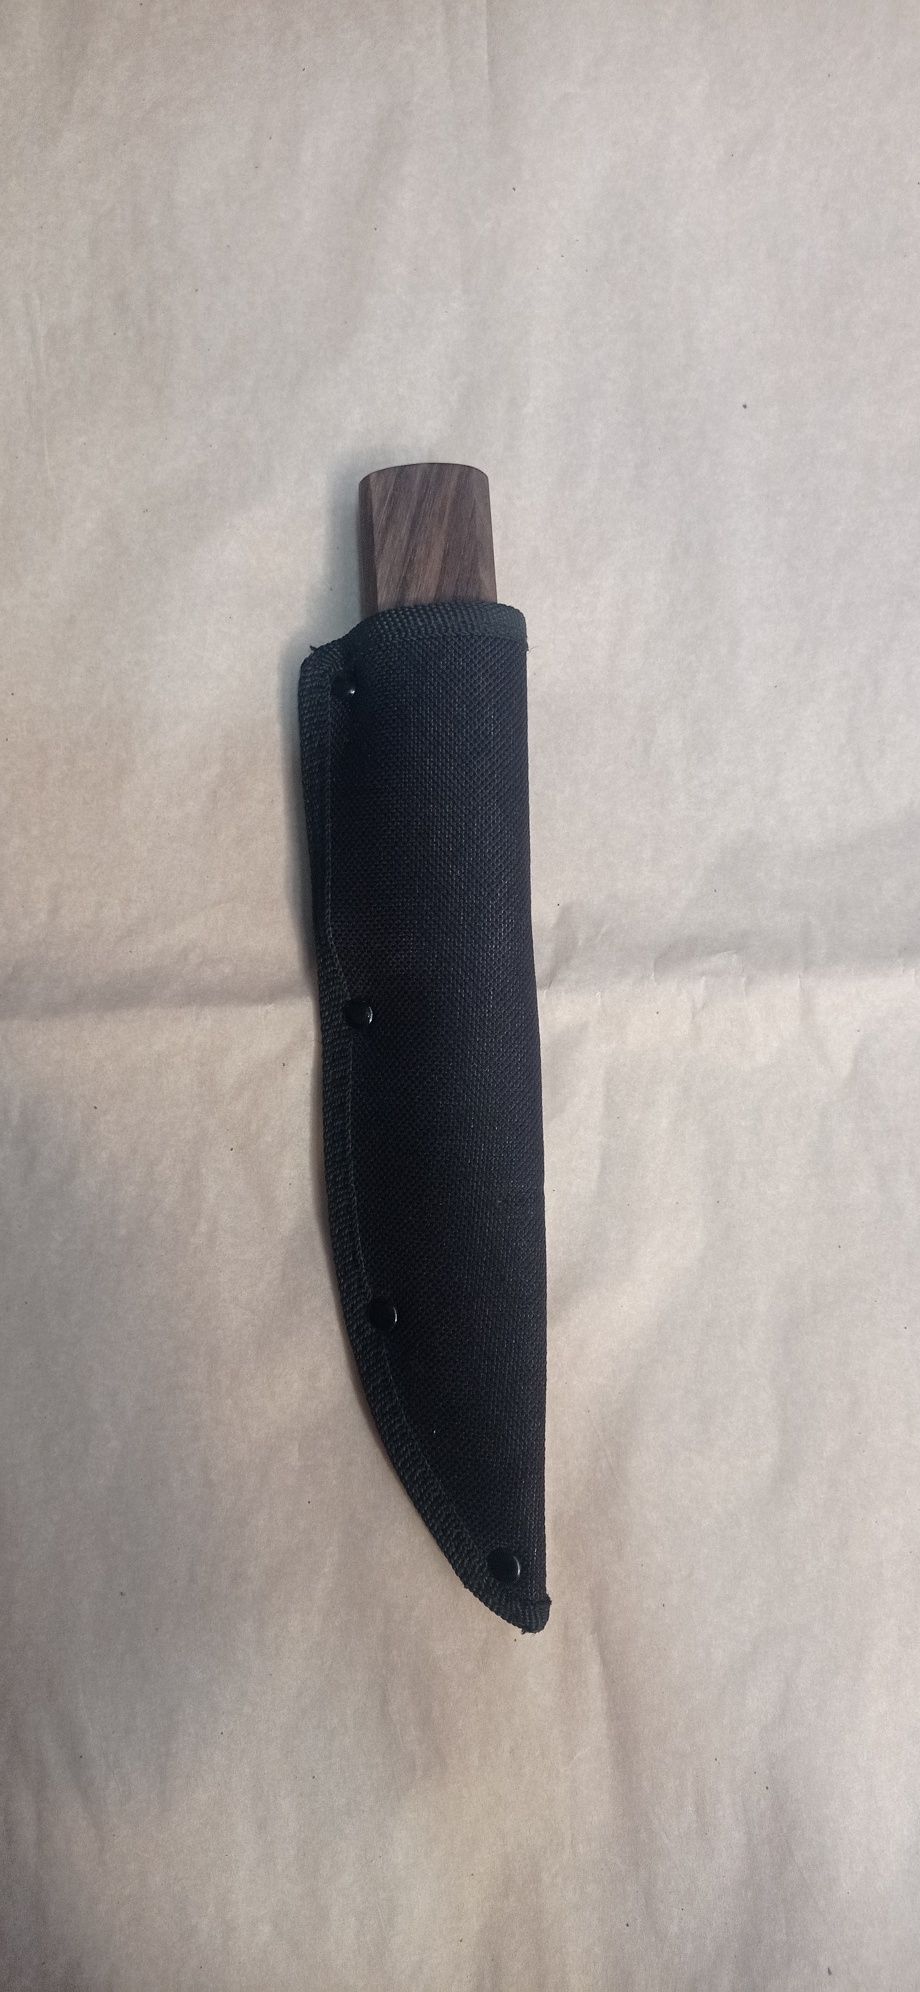 Якутский нож ручной работы